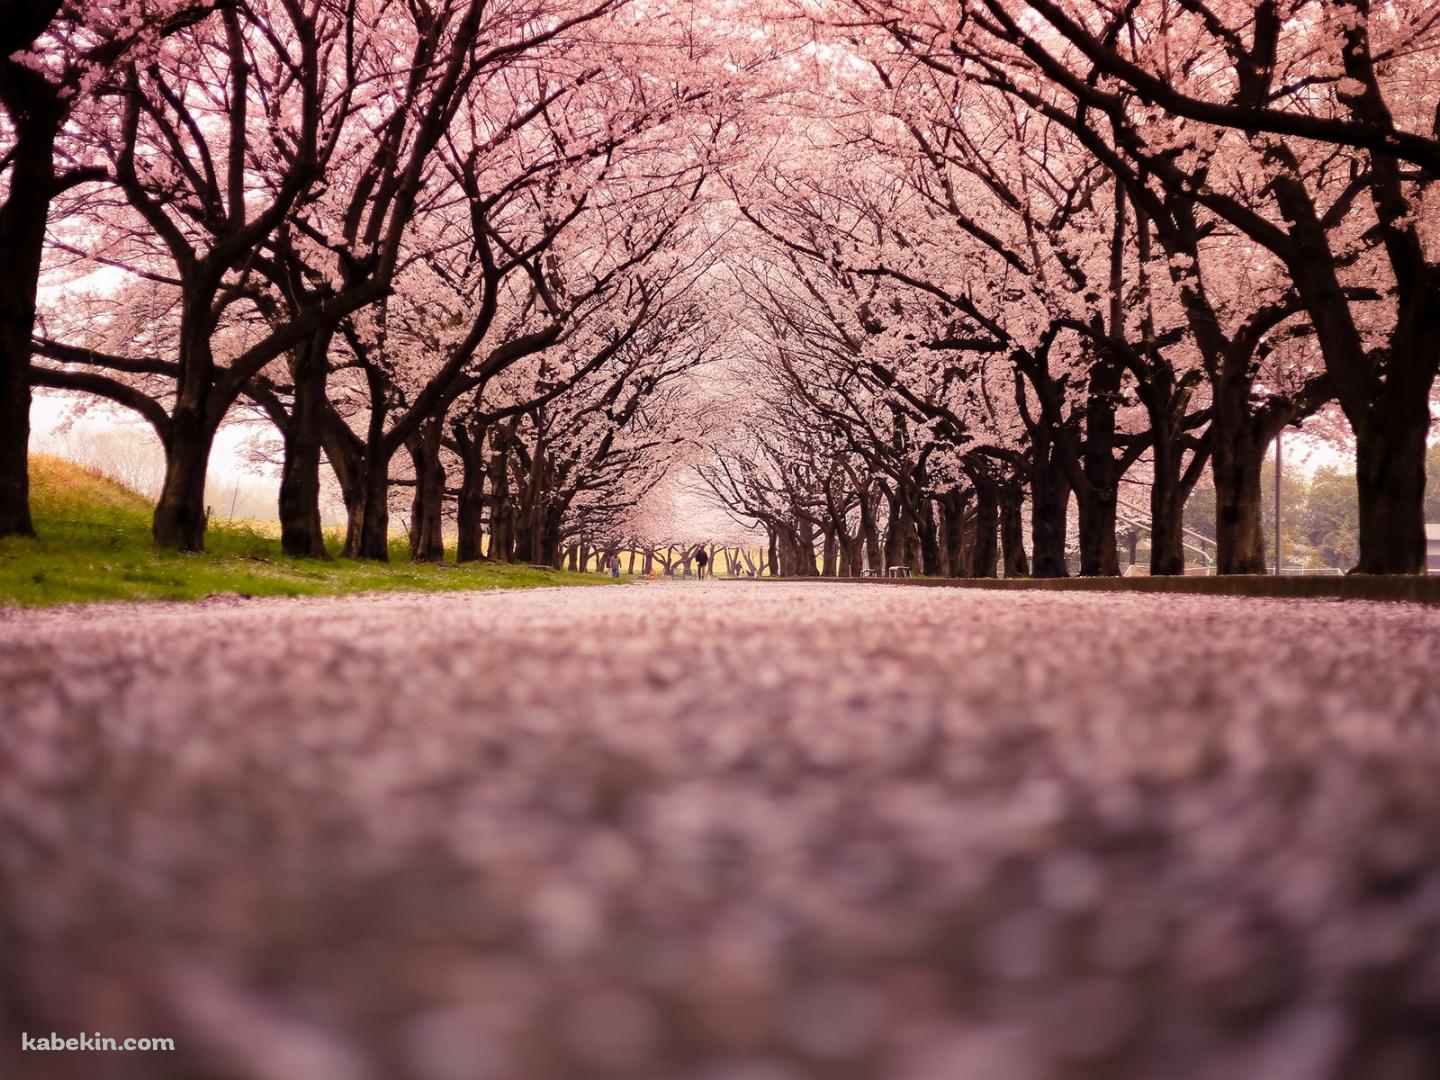 一面の桜の景色の壁紙(1440px x 1080px) 高画質 PC・デスクトップ用